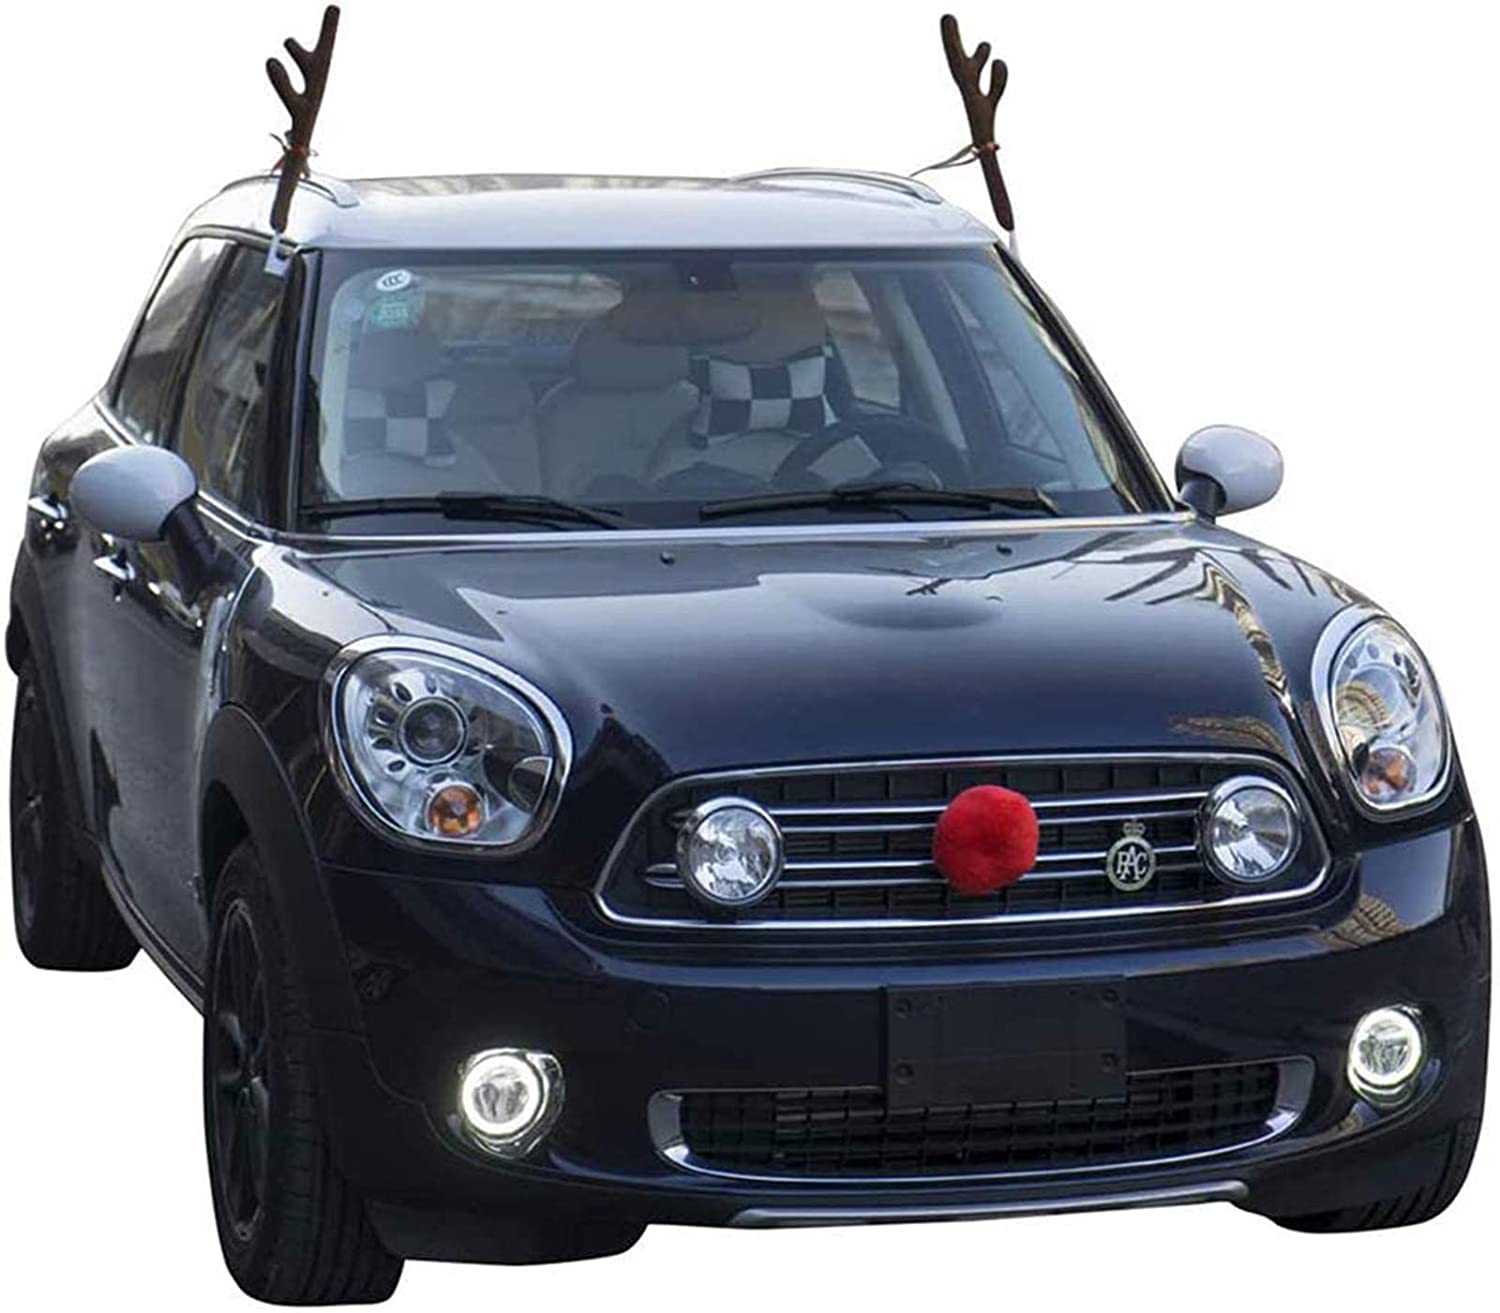 Reindeer antler car decoration